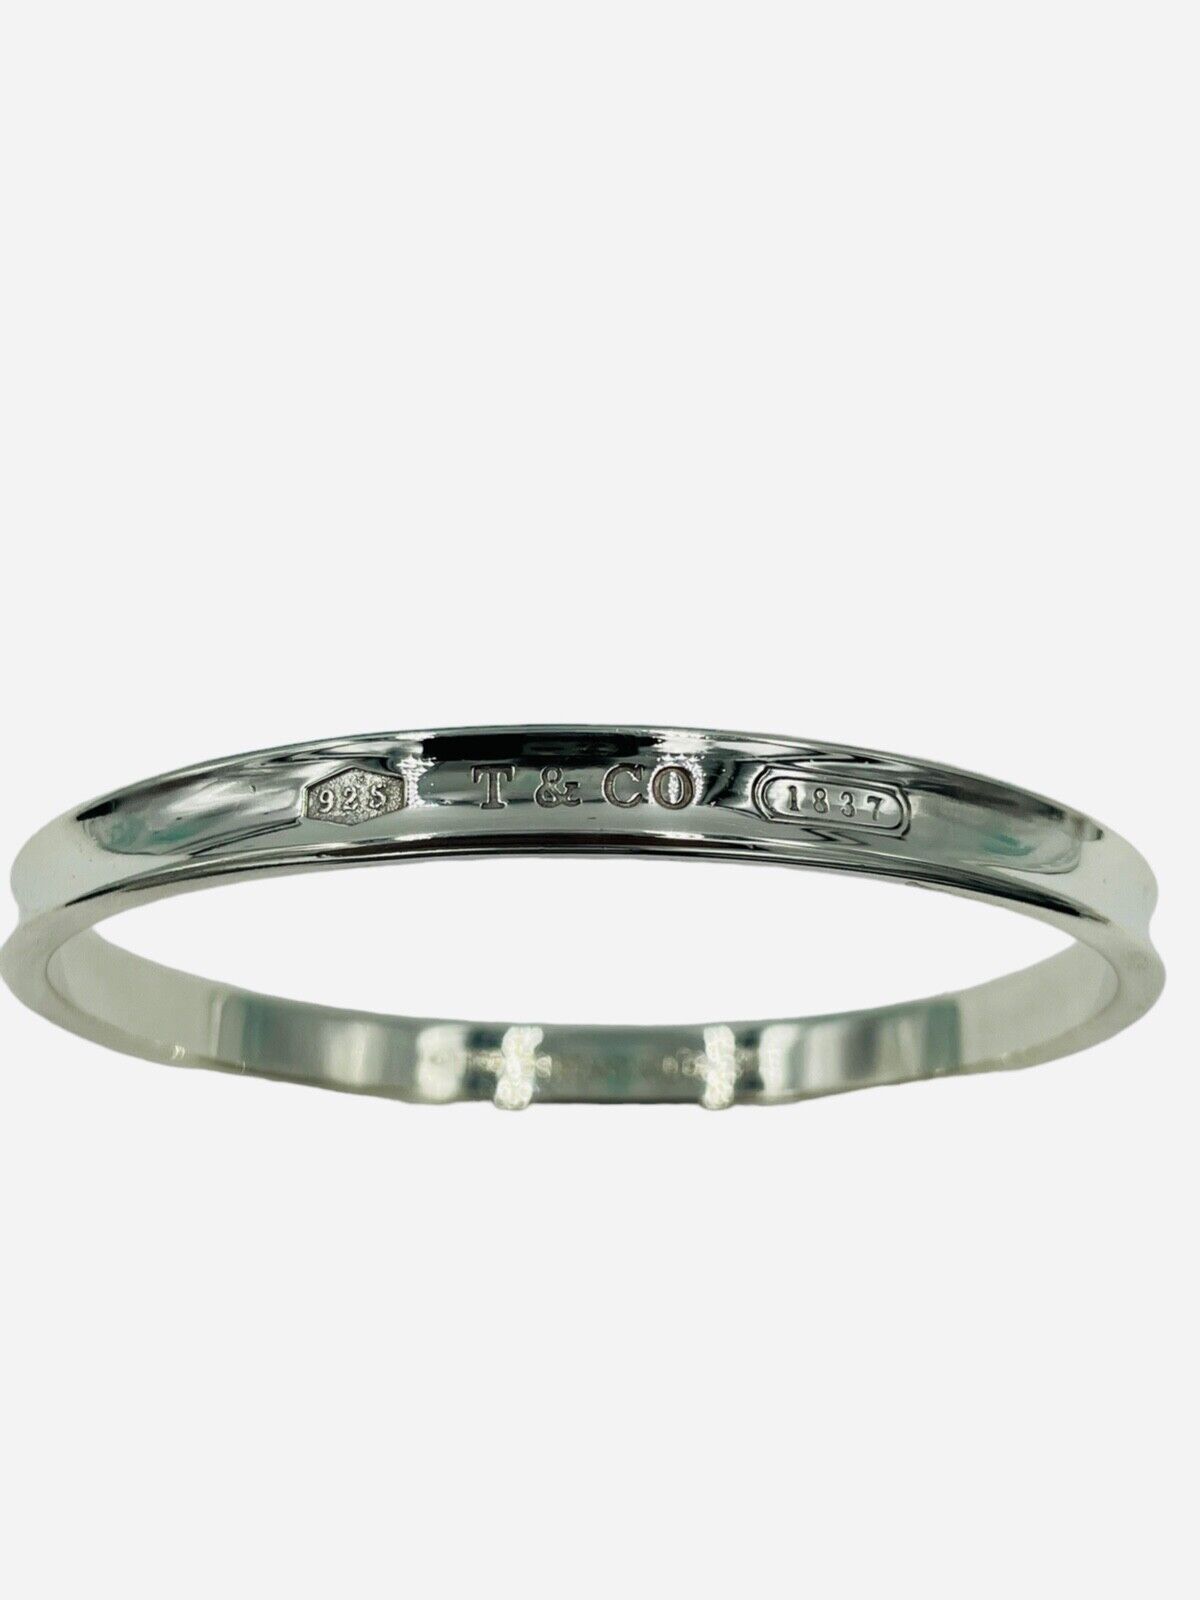 Tiffany & Co. 1837 Bangle Bracelet Sterling Silver 925